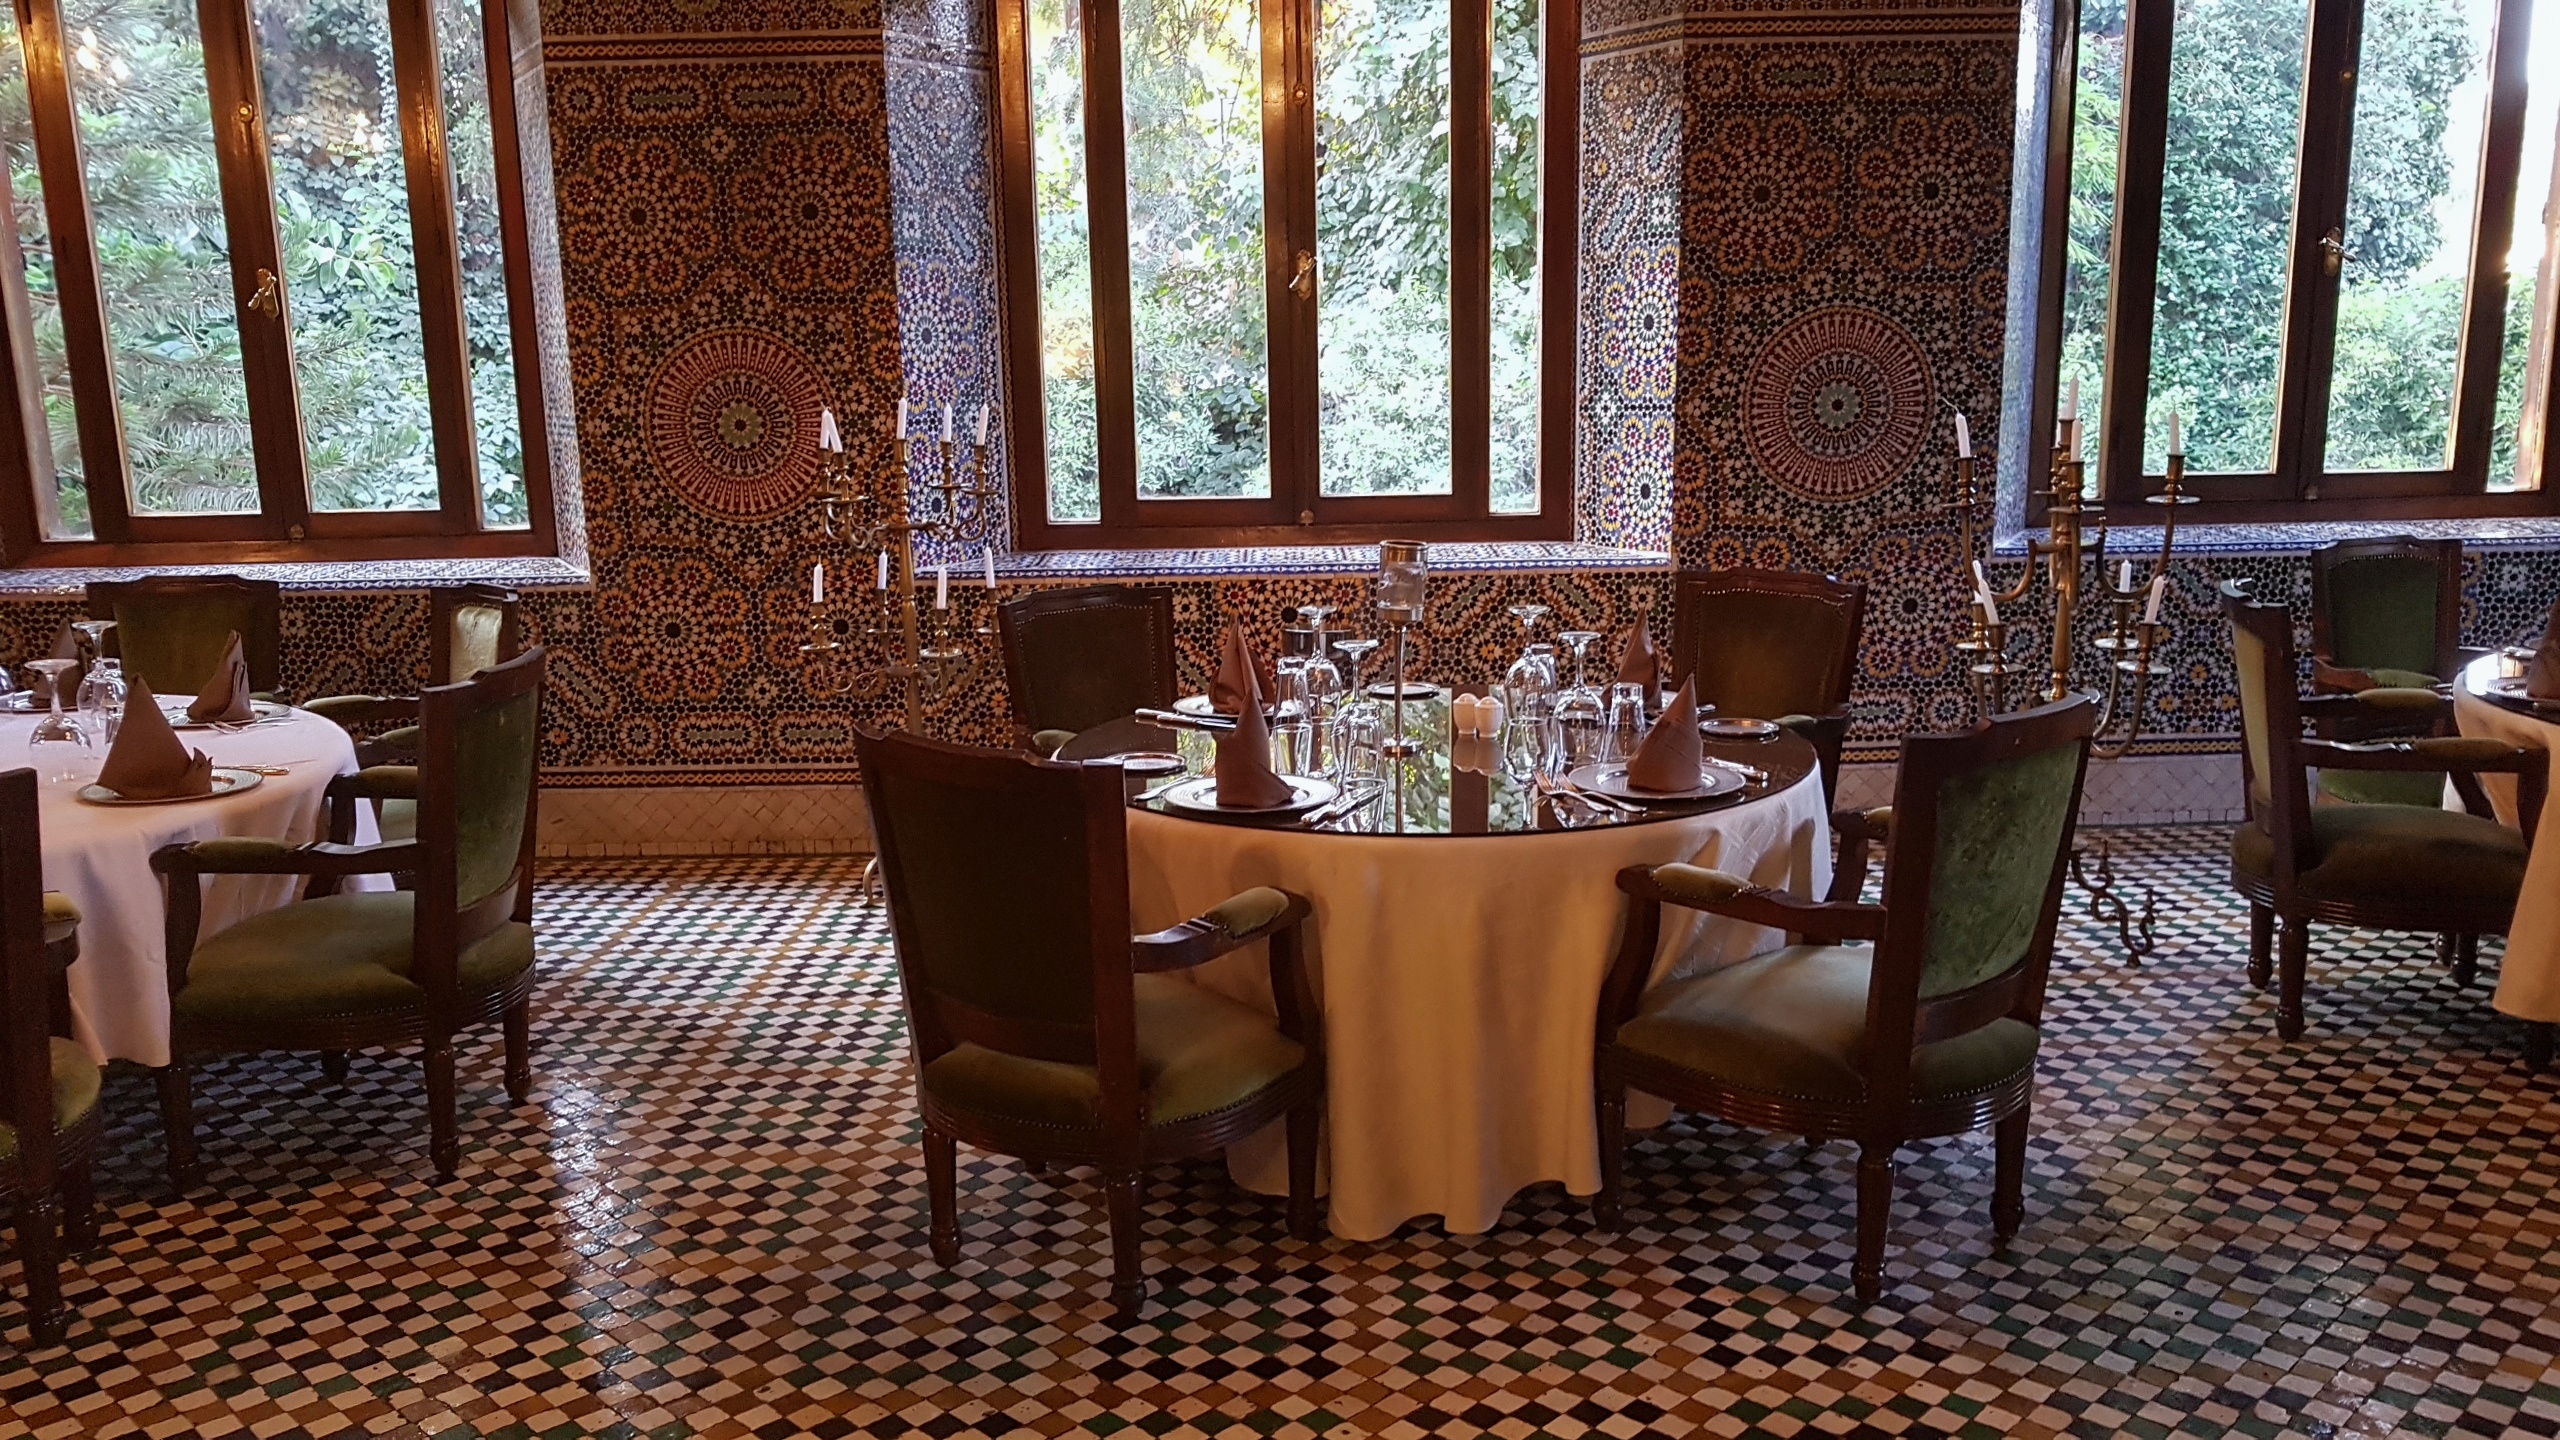 Marokko Stilvoll Essen In Marrakesch Restaurant Special Lifestylezauber De